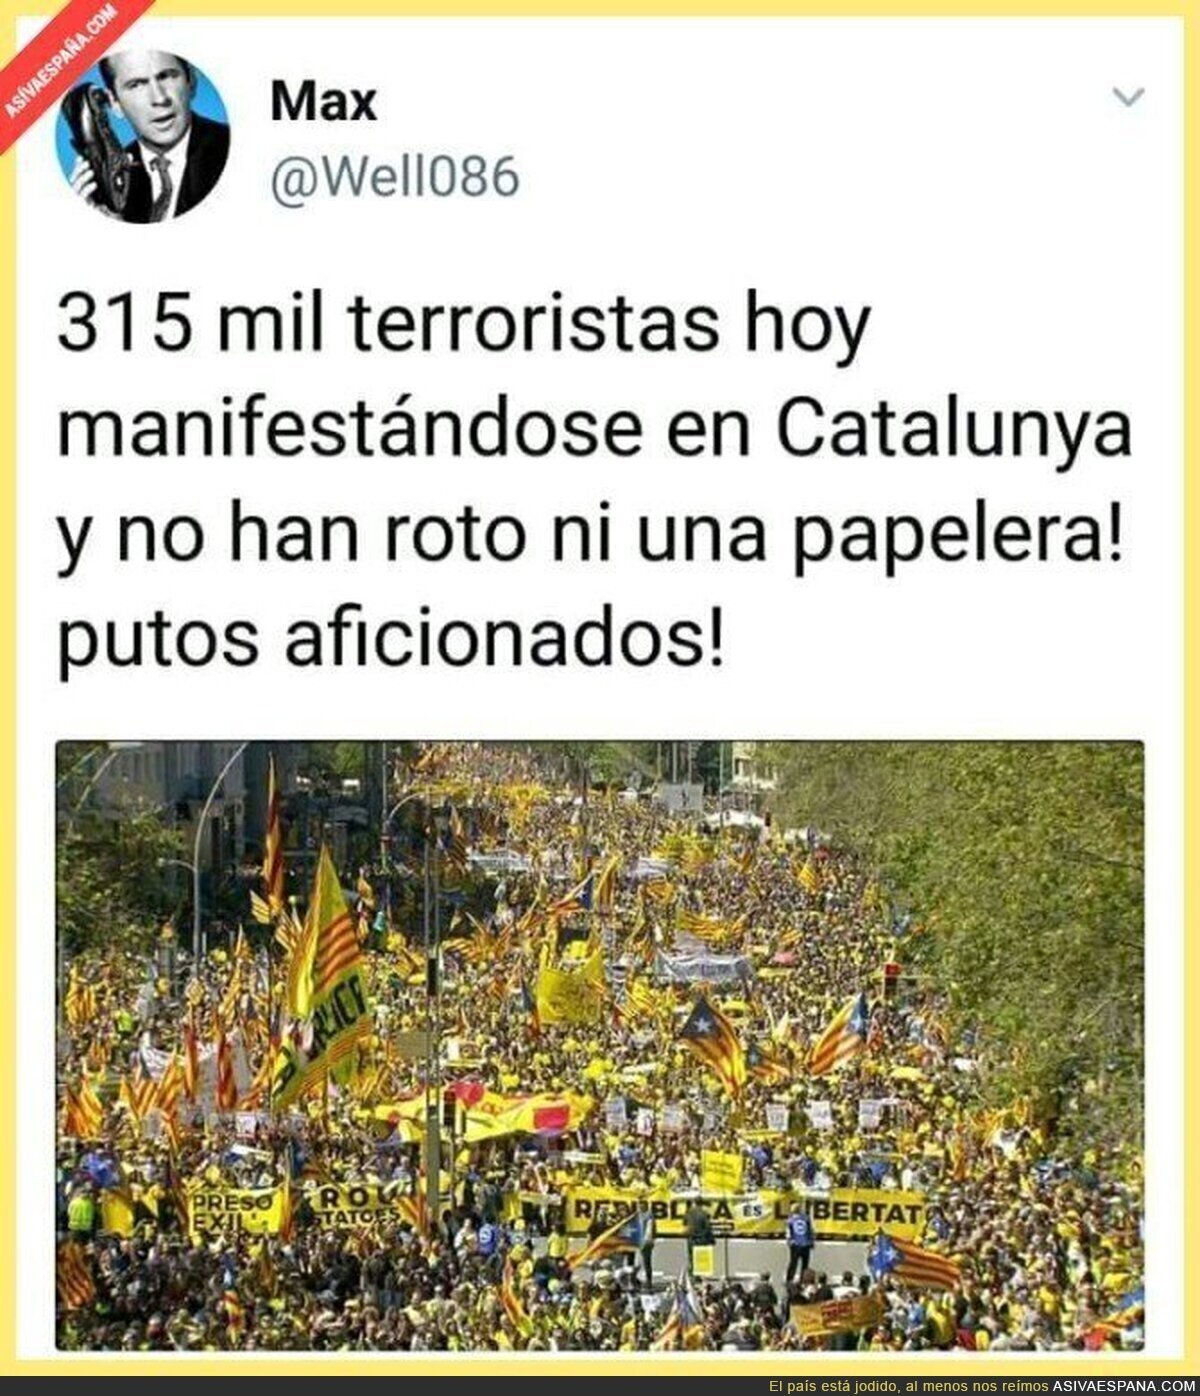 La realidad del terrorismo catalán